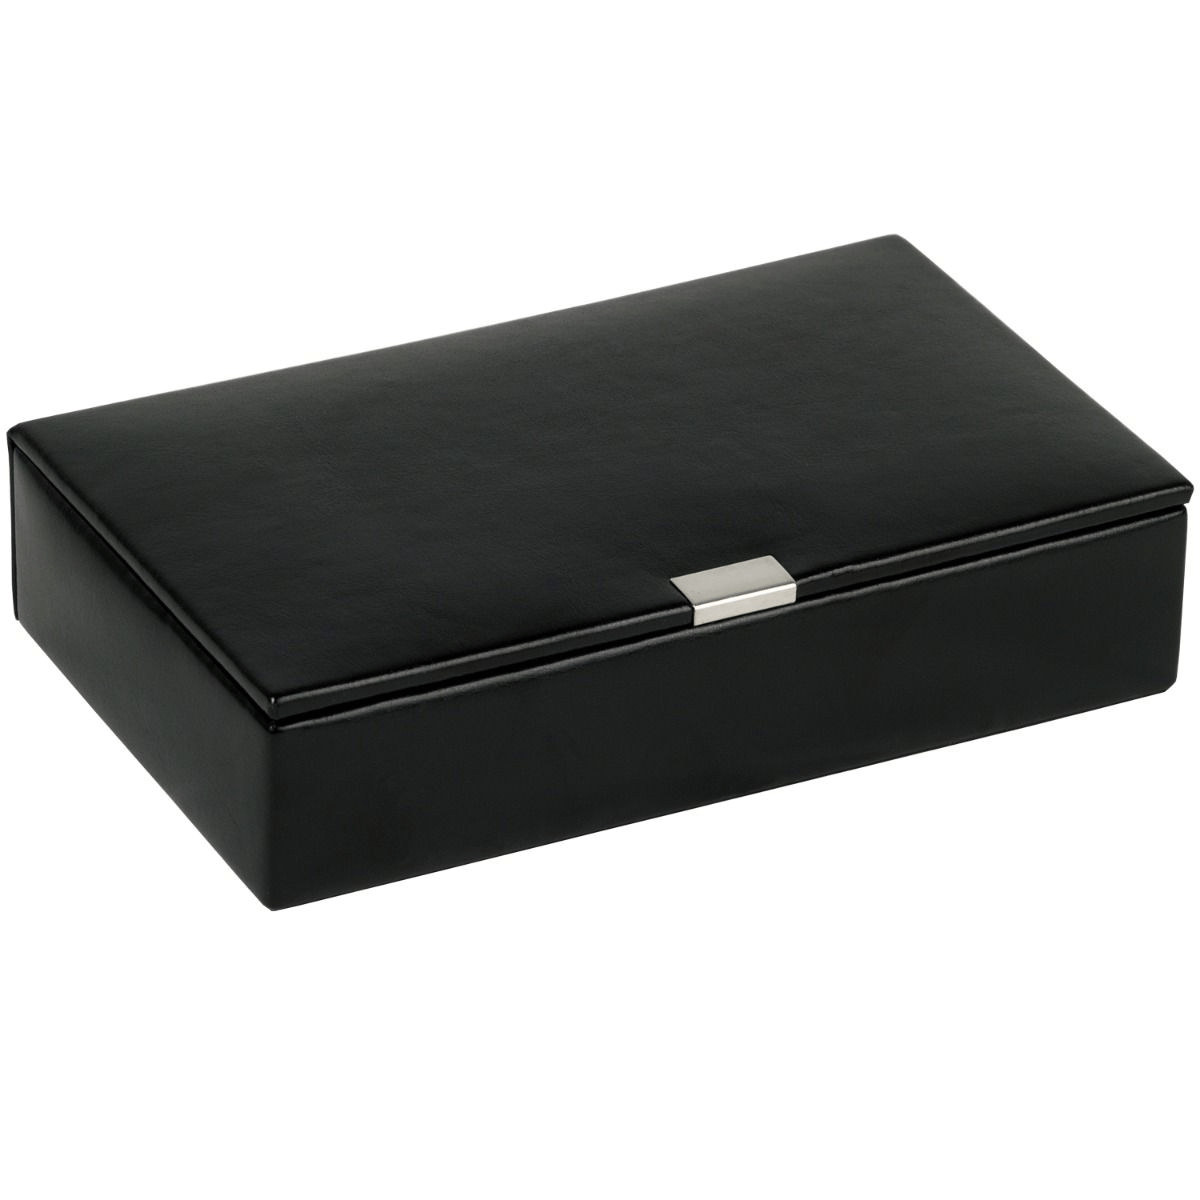 WOLF 290502 15 Piece Black Leather Cufflink Box Heritage